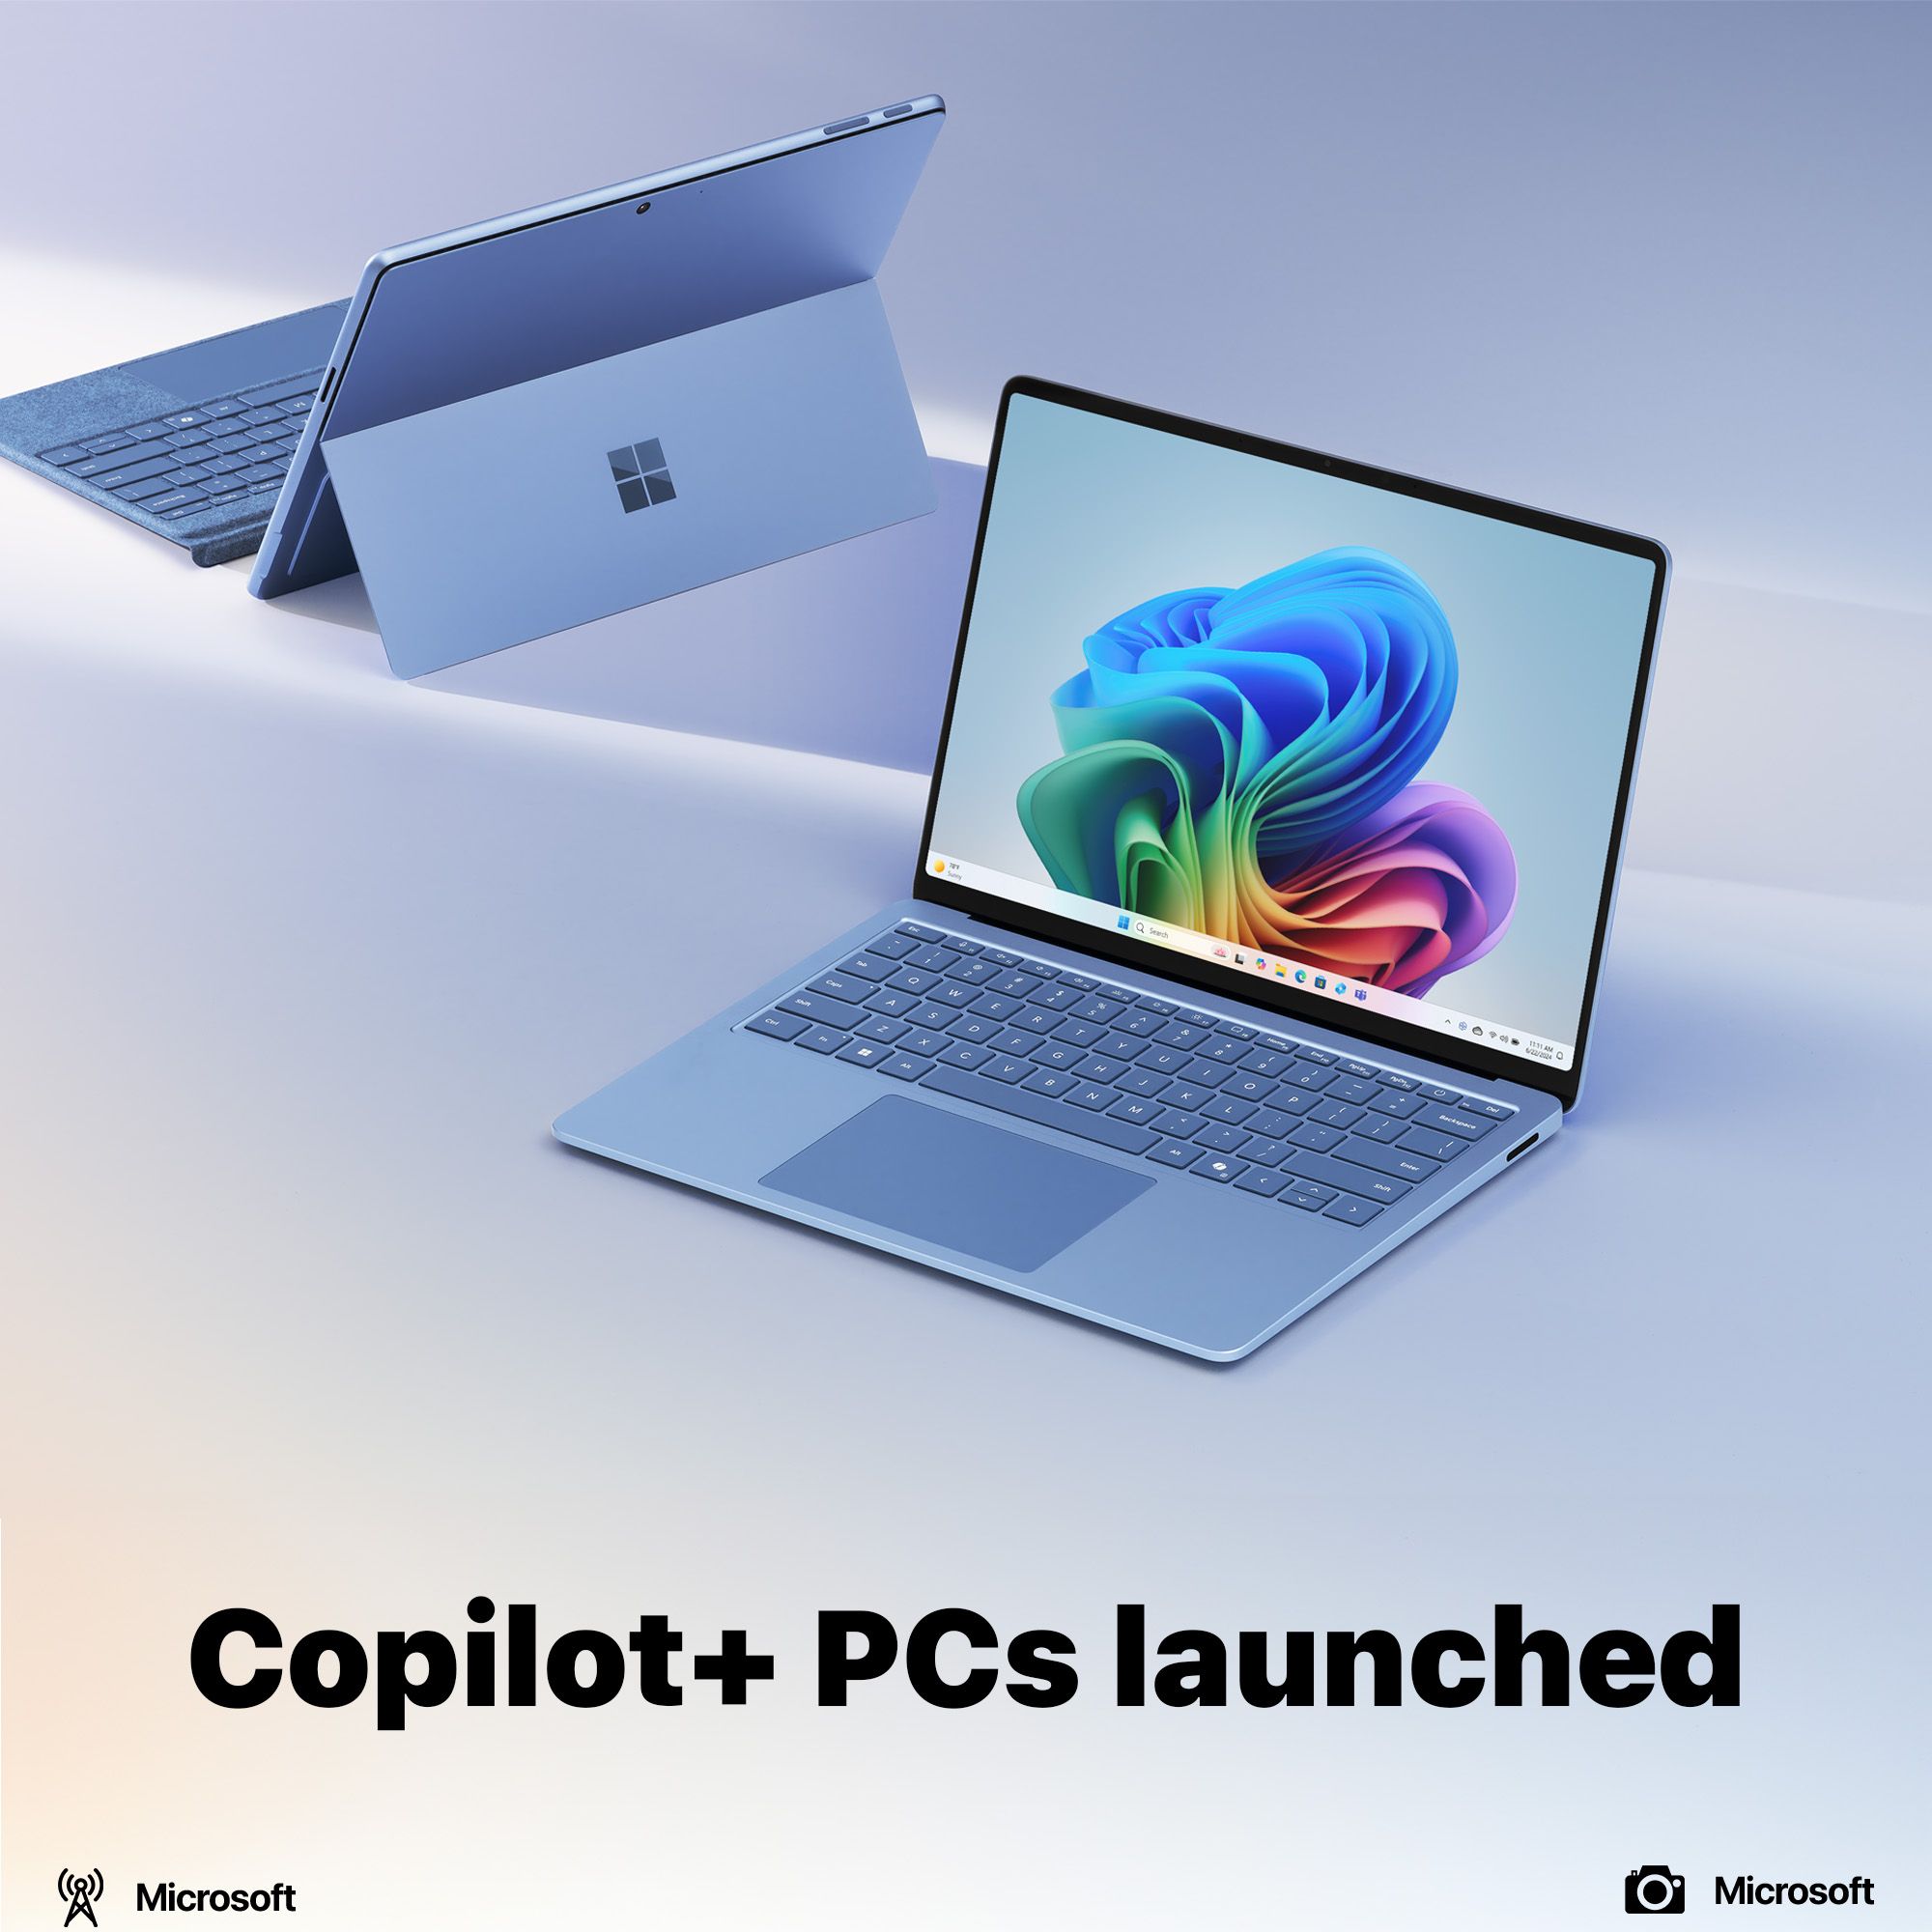 Copilot+ PCs launched